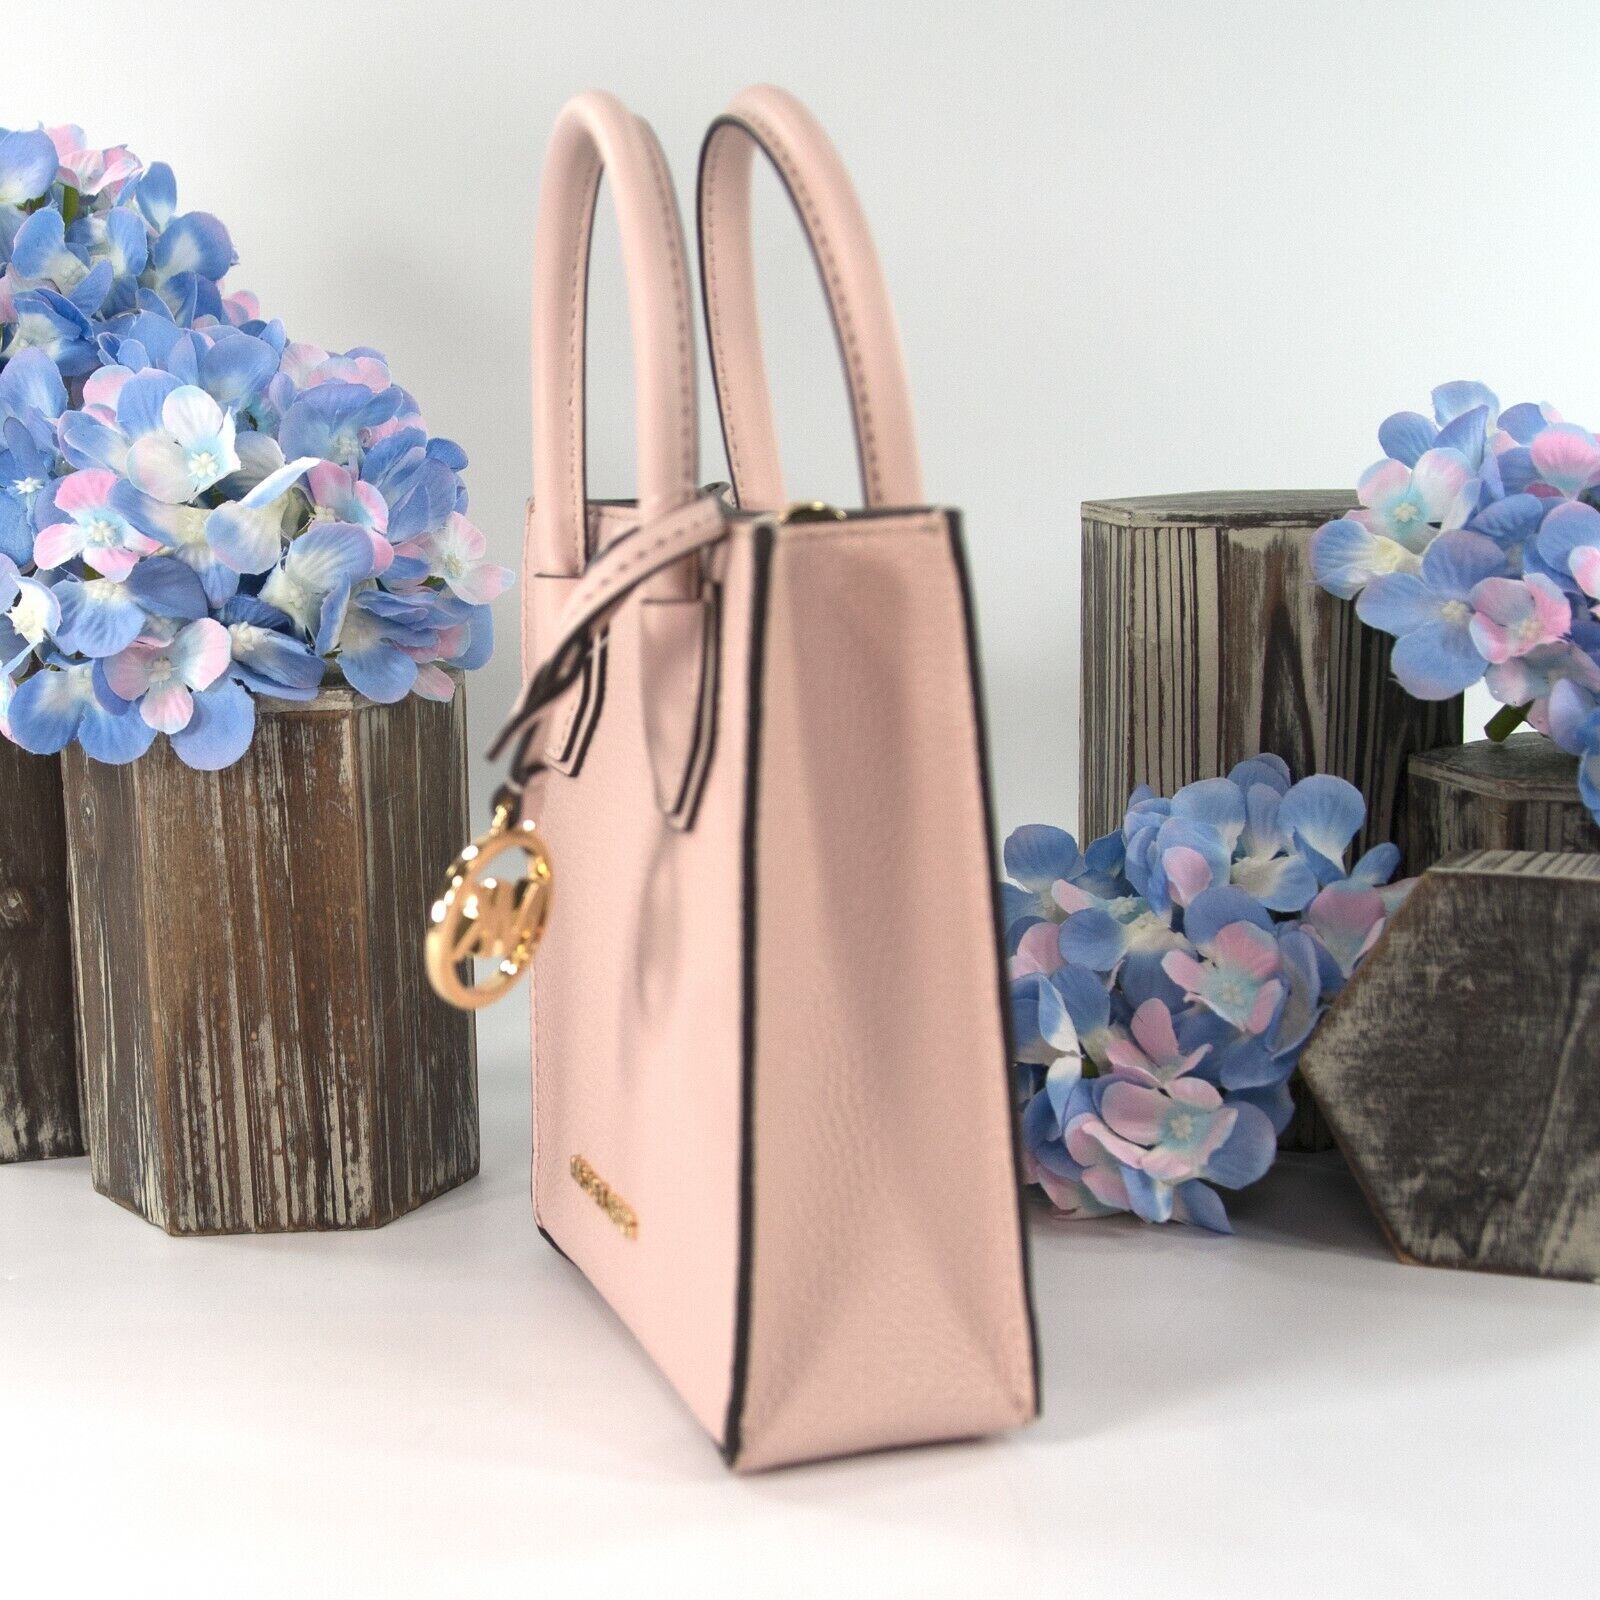 Michael Kors Mercer Convertible Tote Bag Pink For Women